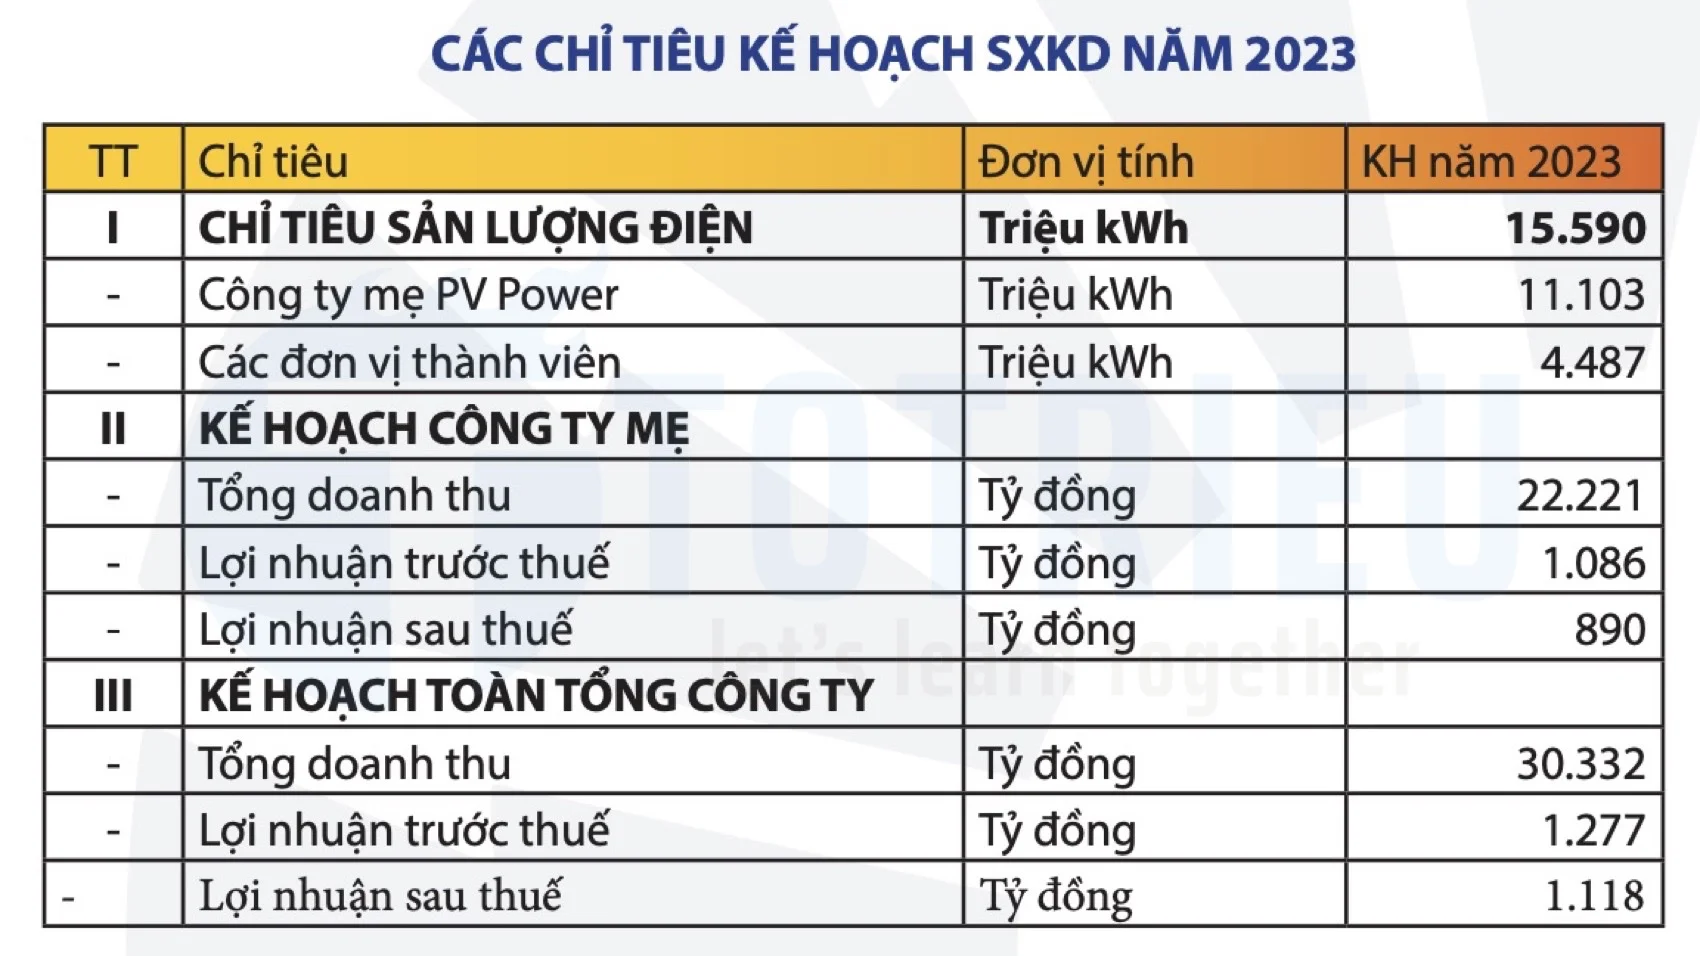 Chỉ tiêu kế hoạch PV POWER 2023